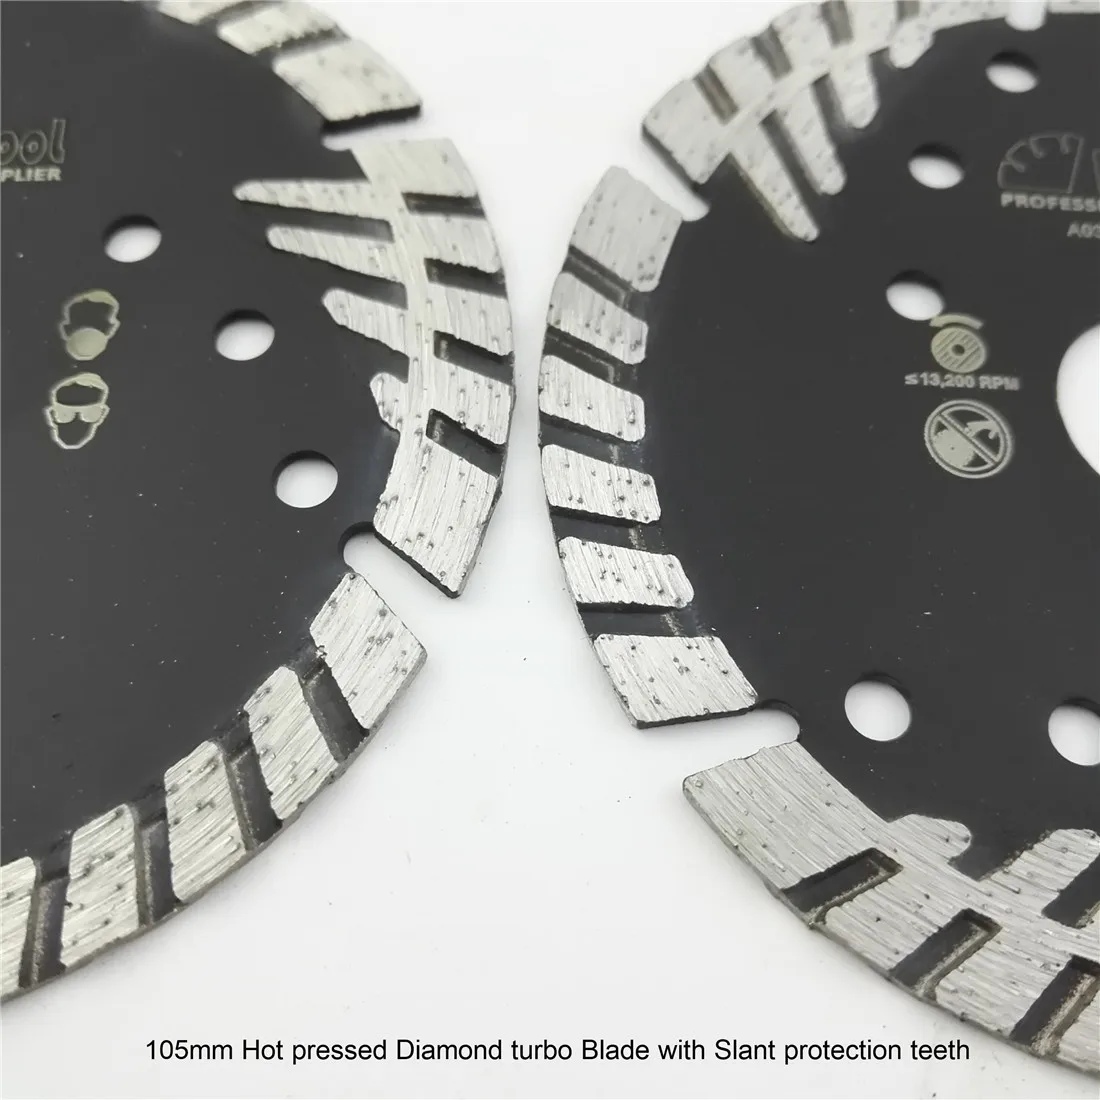 2 шт. 105 мм горячего прессования diamond turbo лезвия с наклонной защиты зубов 4 "Алмазные диски для камня и бетона резки 20 мм